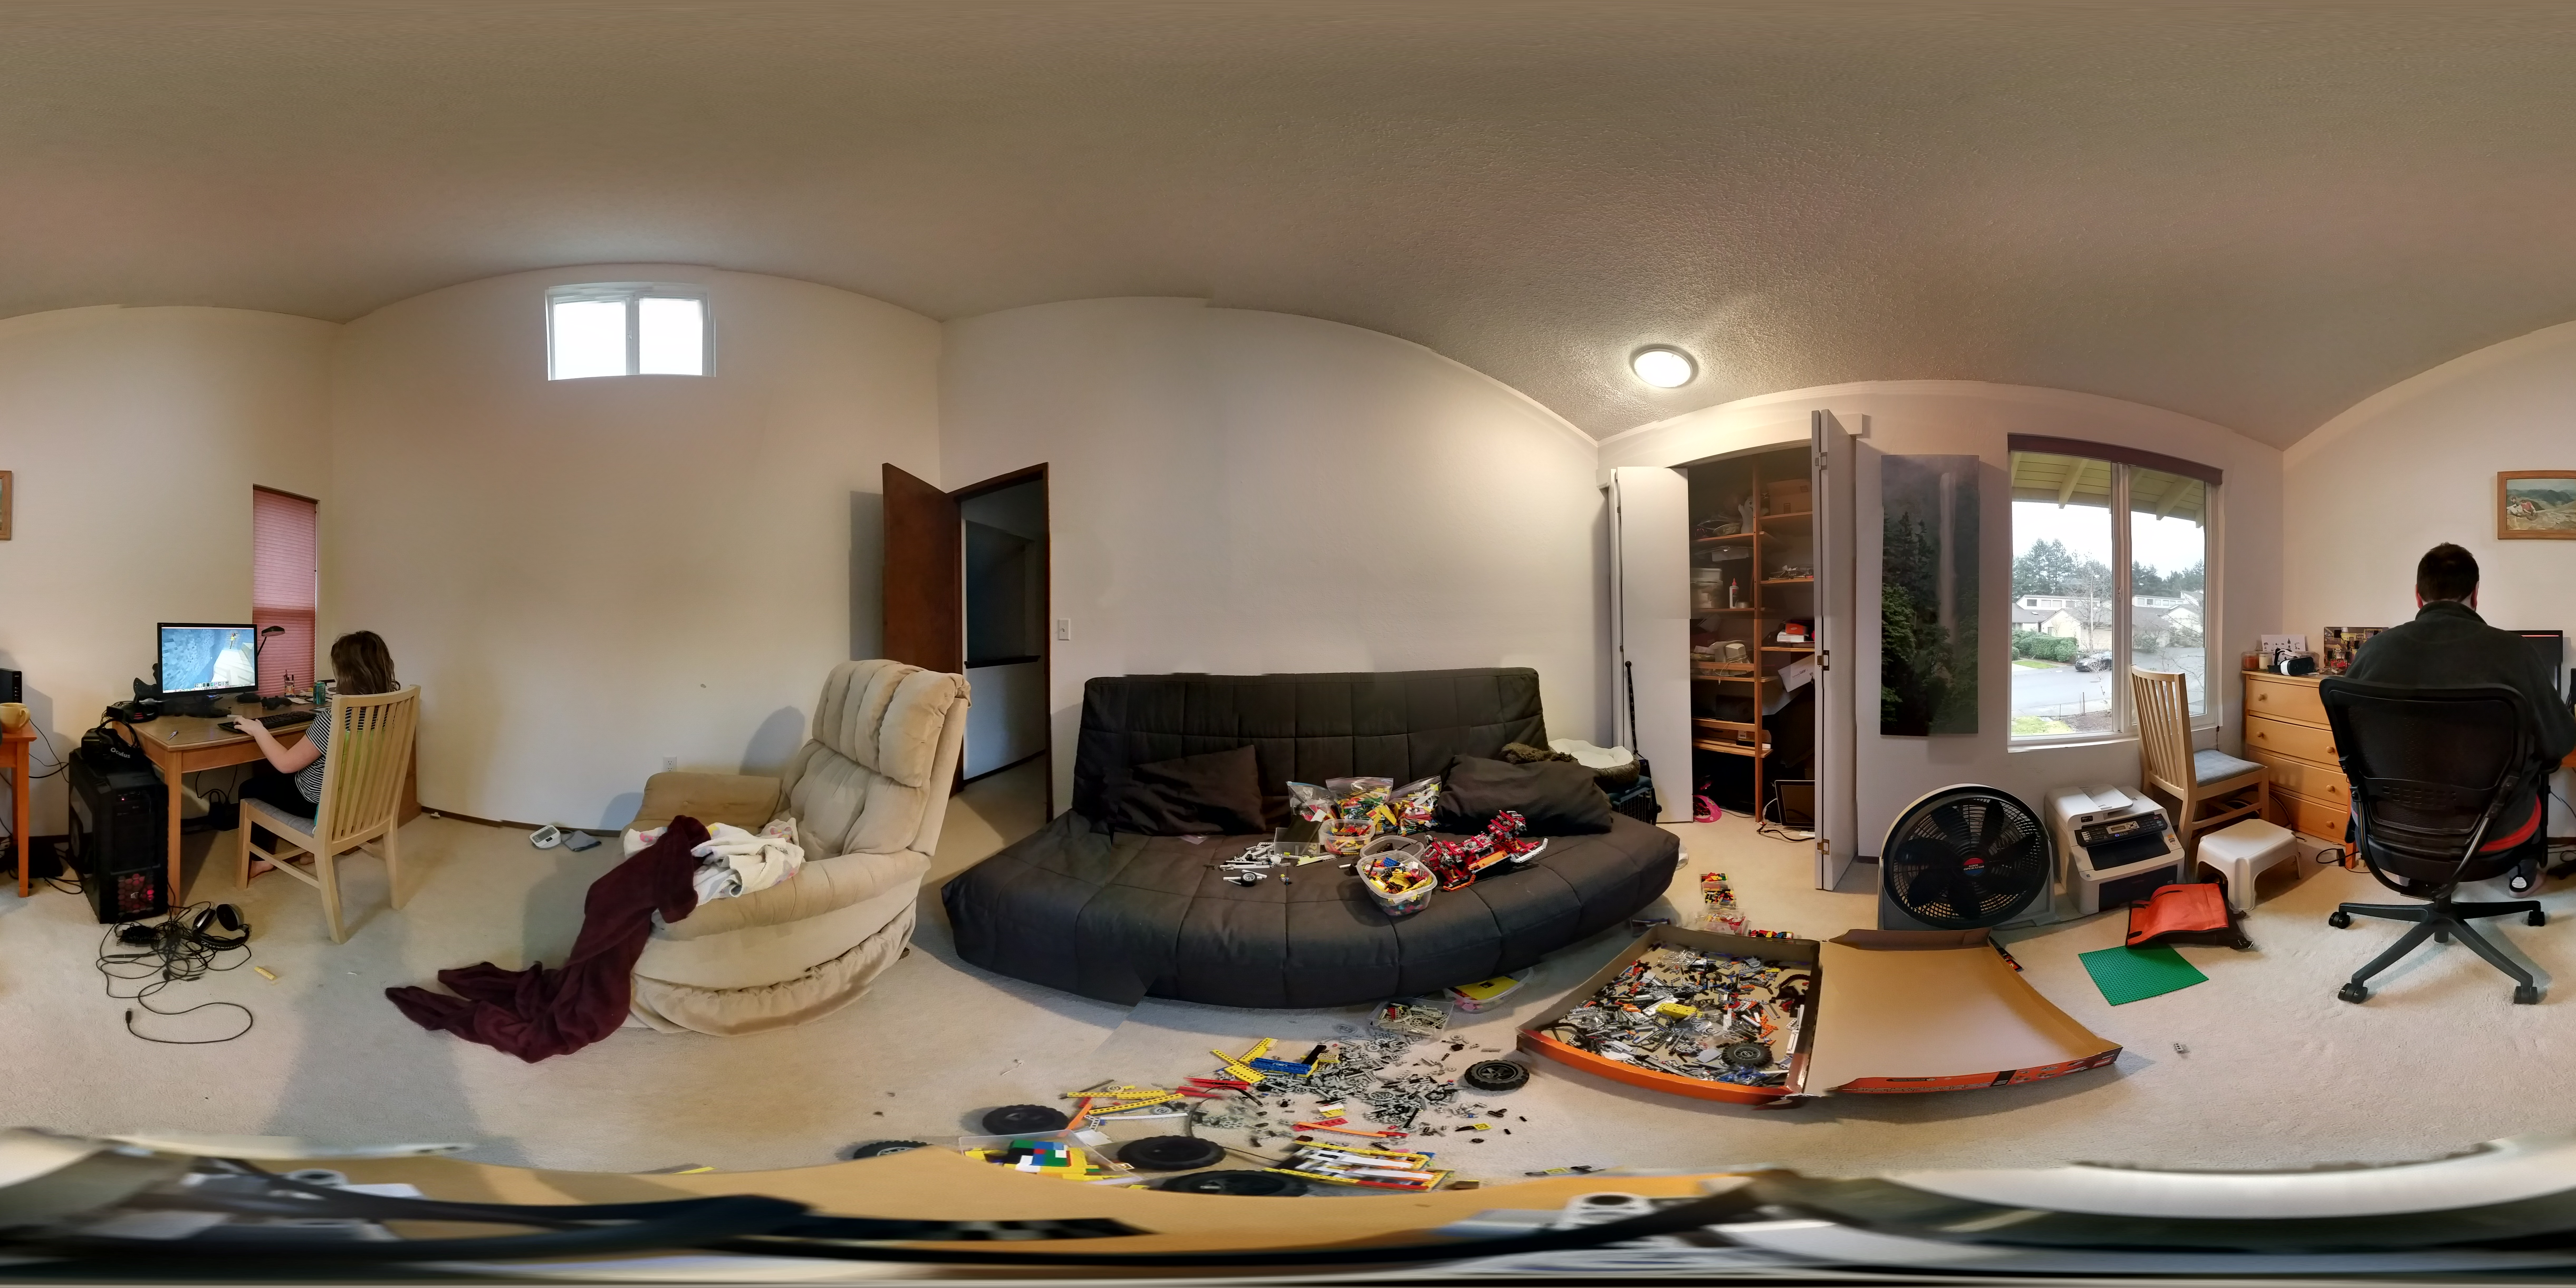 Sample 360° Photo for Gear VR taken using the Lego Photobot